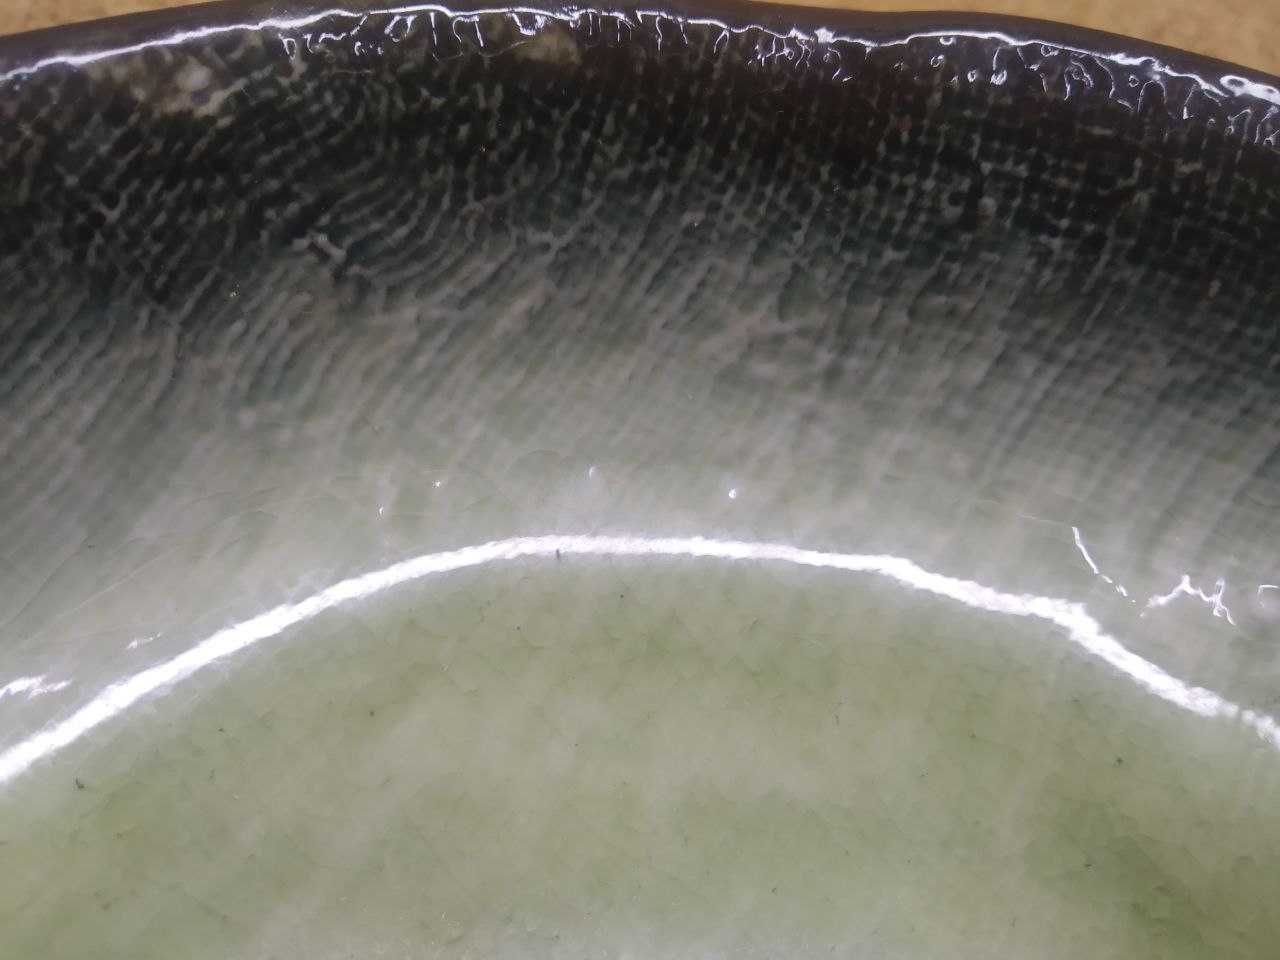 Бирюзовый фарфоровый салатник тарелка тарілка Kutahya Porselen 160 мм